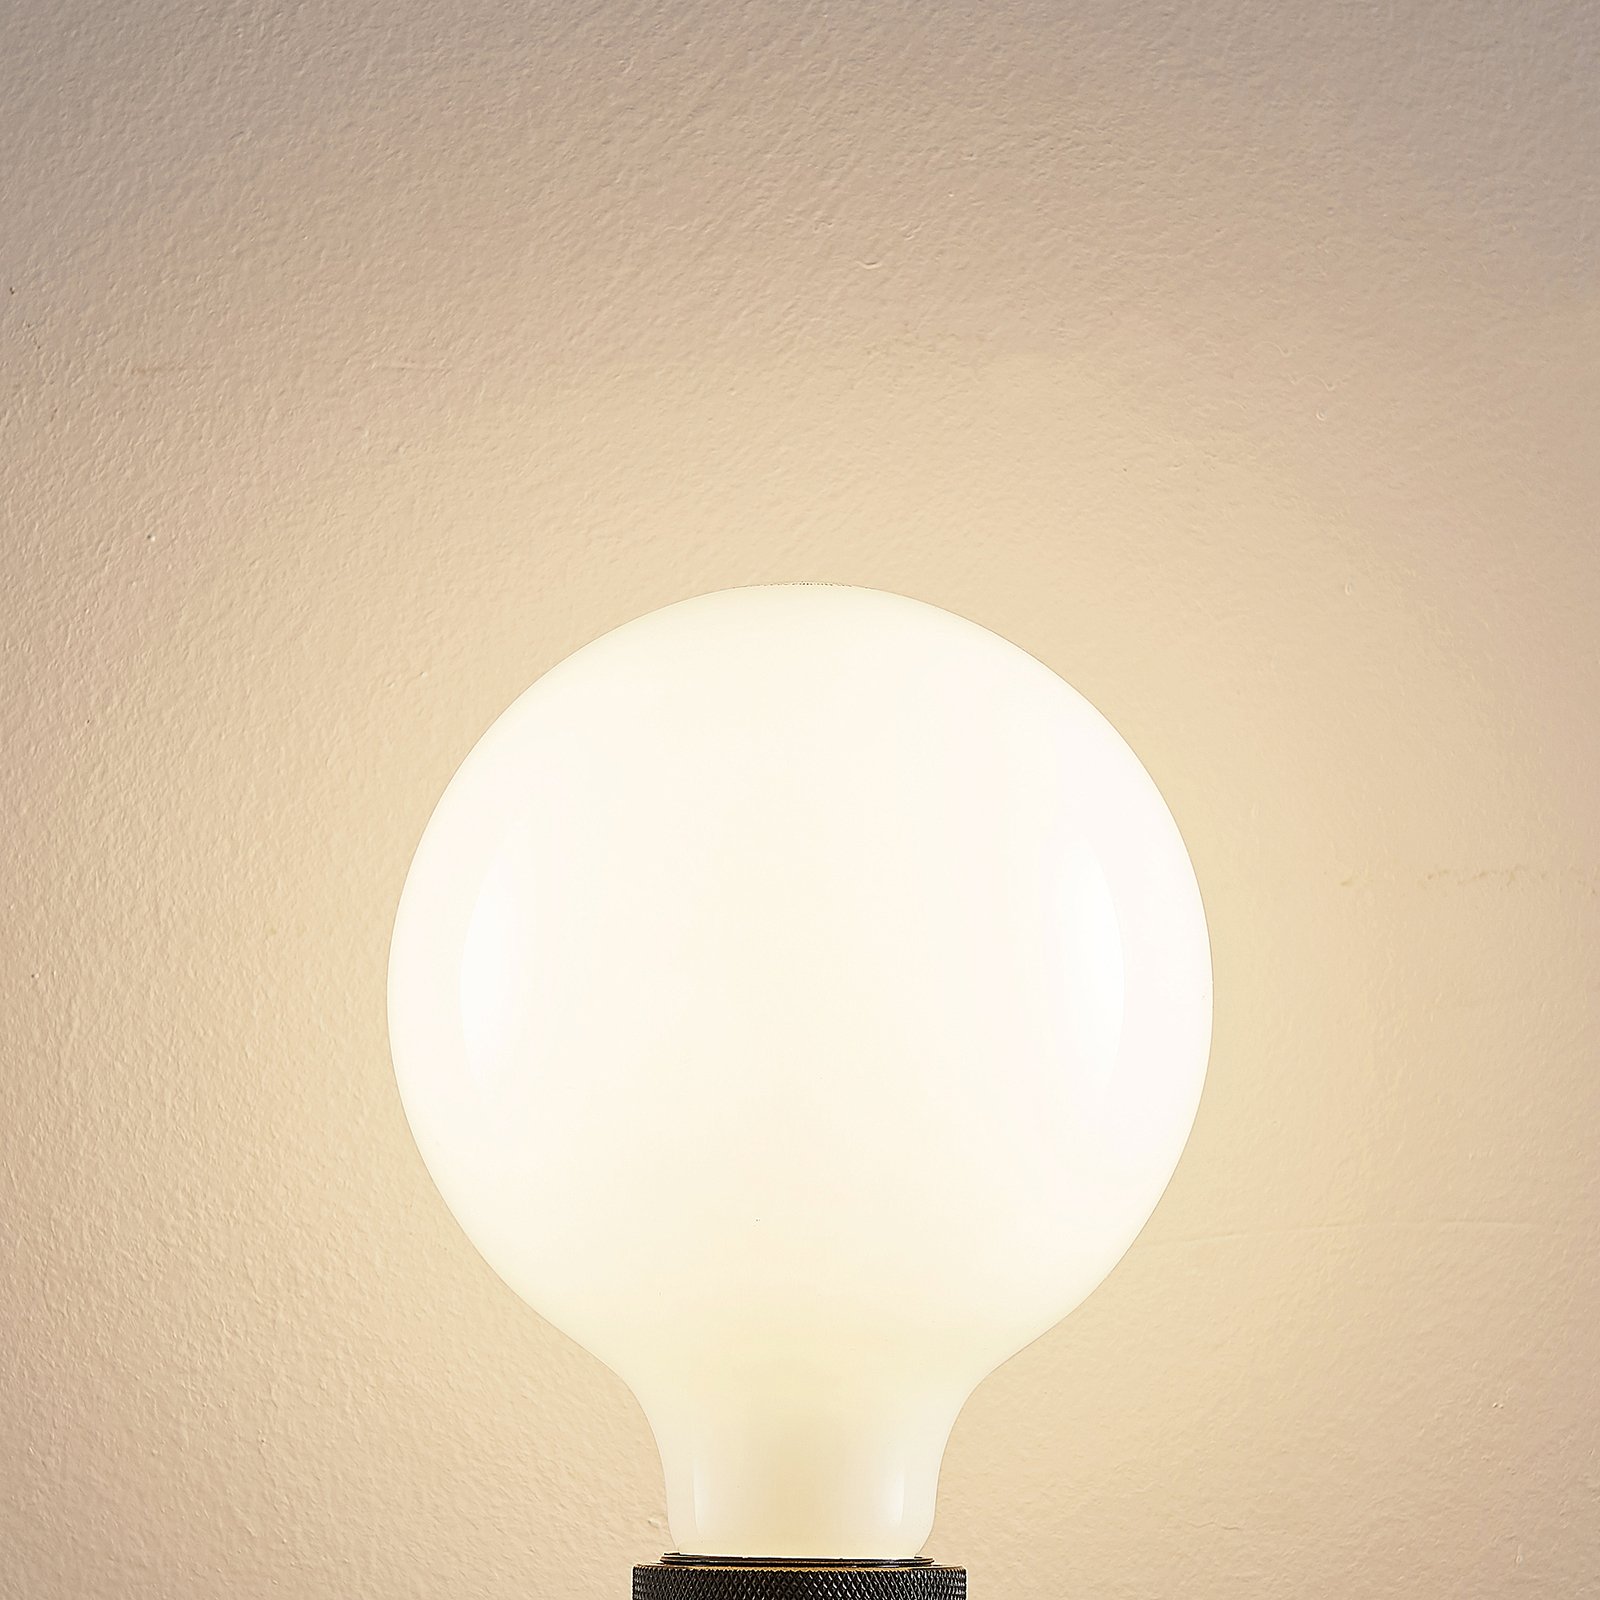 LED-Lampe E27 6W 2.700K G125 Globe, dimmbar, opal